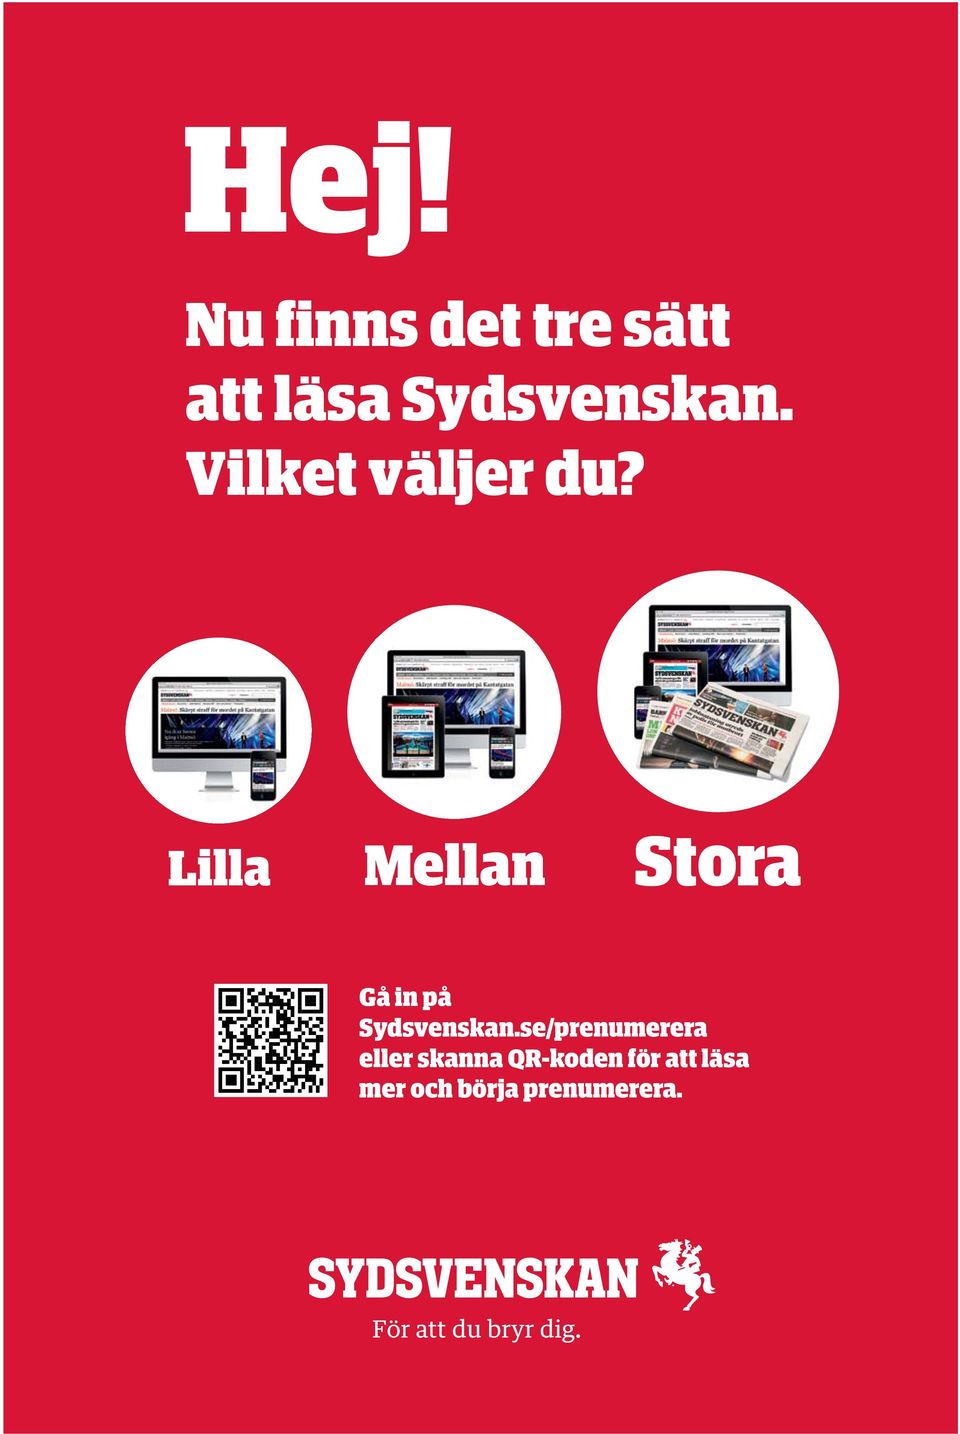 se/prenumerera eller skanna QR-koden för att läsa mer Gå in och på börja prenumerera. Gå Sydsvenskan.se/prenumerera in på Sydsvenskan.